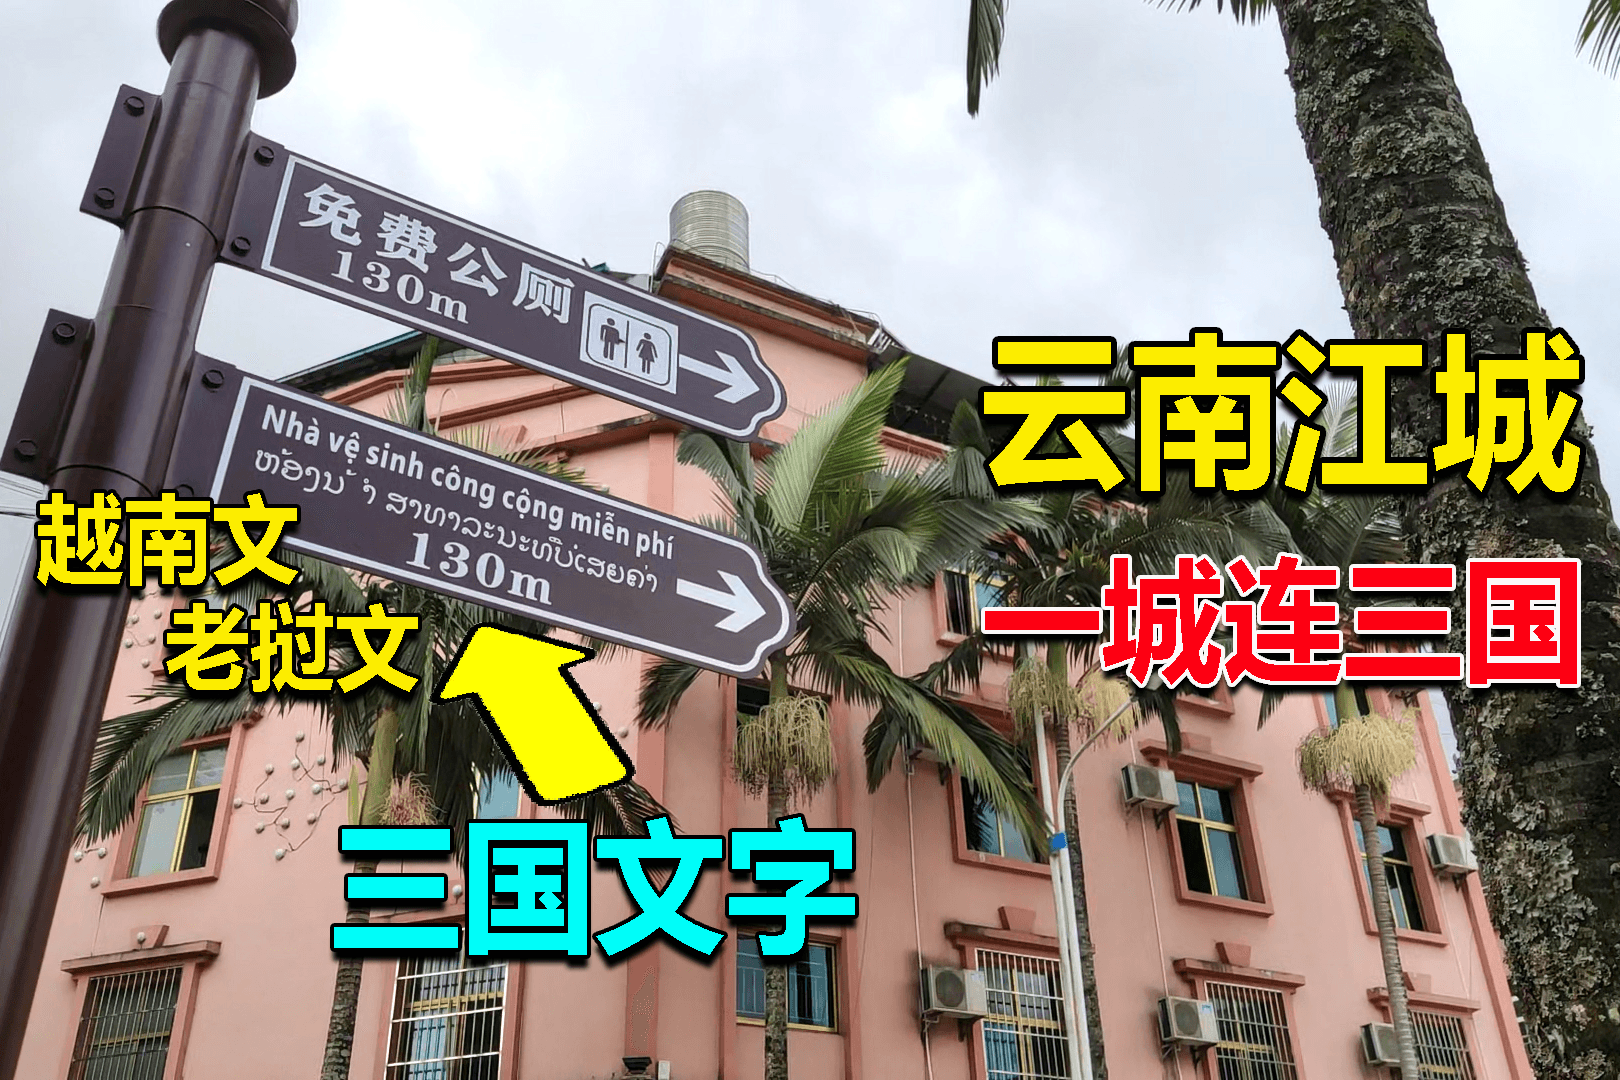 云南边境县江城,一城连三国,路牌招牌都写着越南和老挝文字